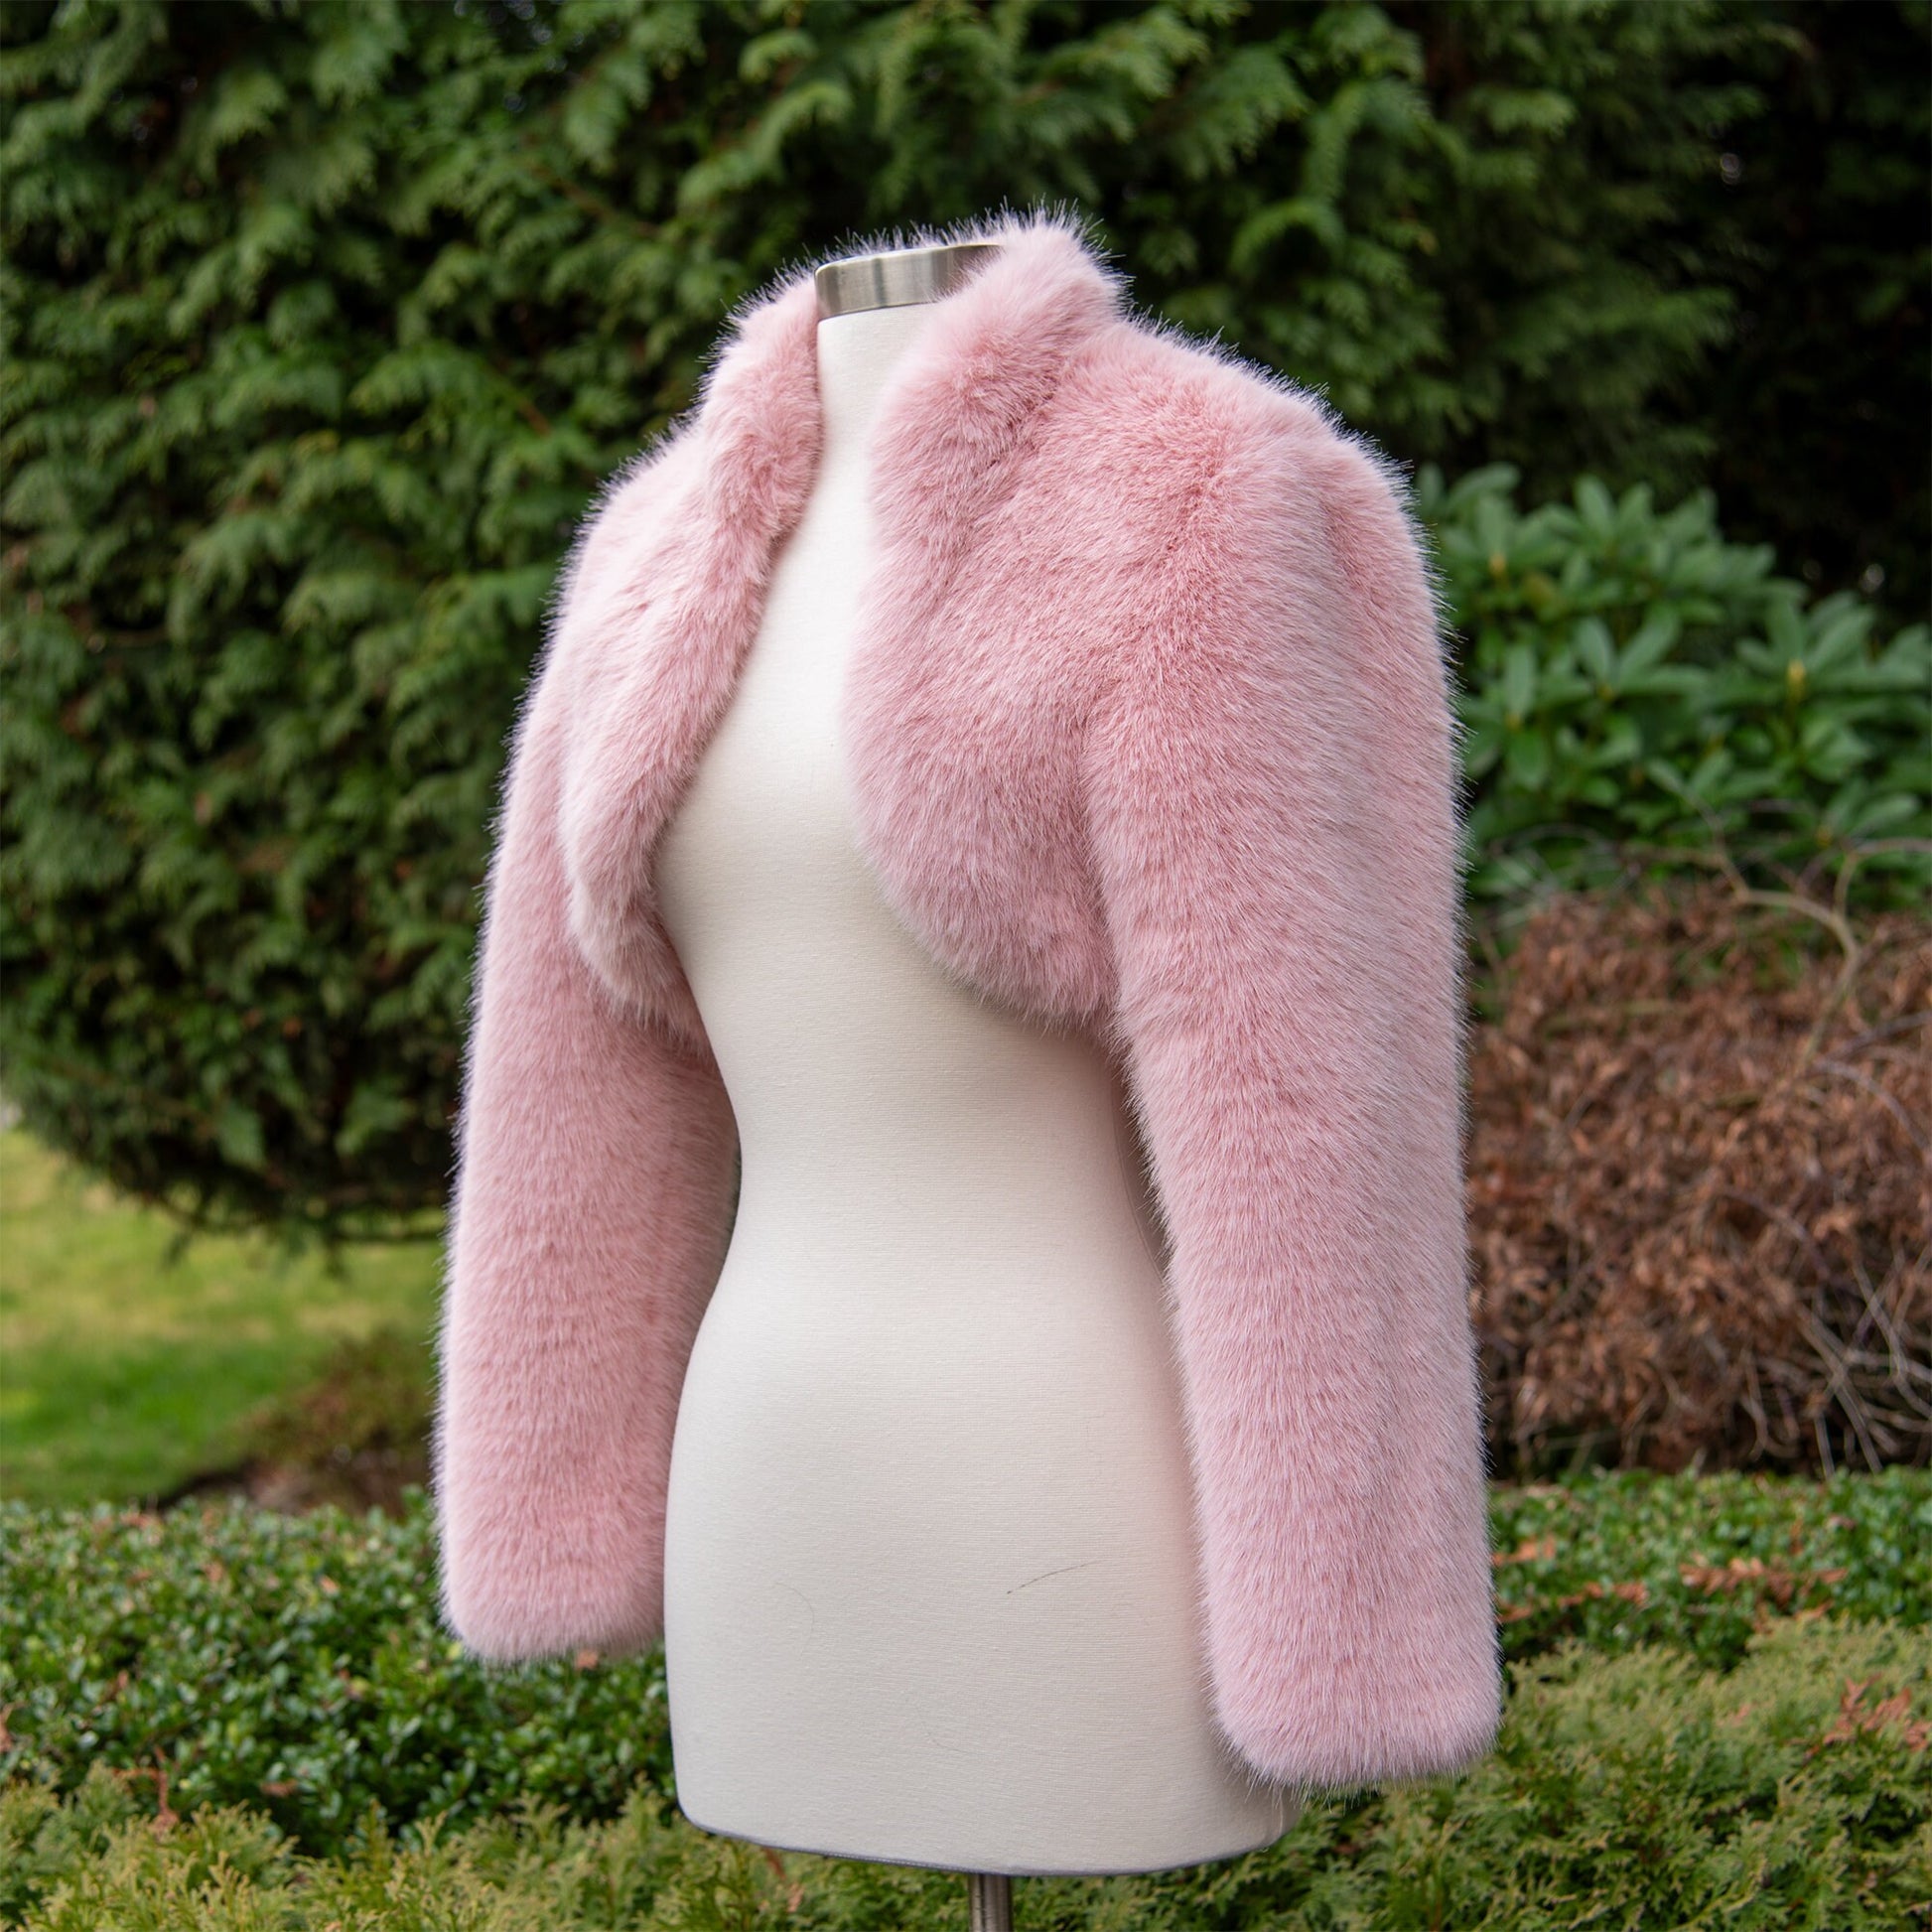 Light pink long sleeve faux fur bolero faux fur jacket faux fur coat faux fur shrug FJ002-light-pink